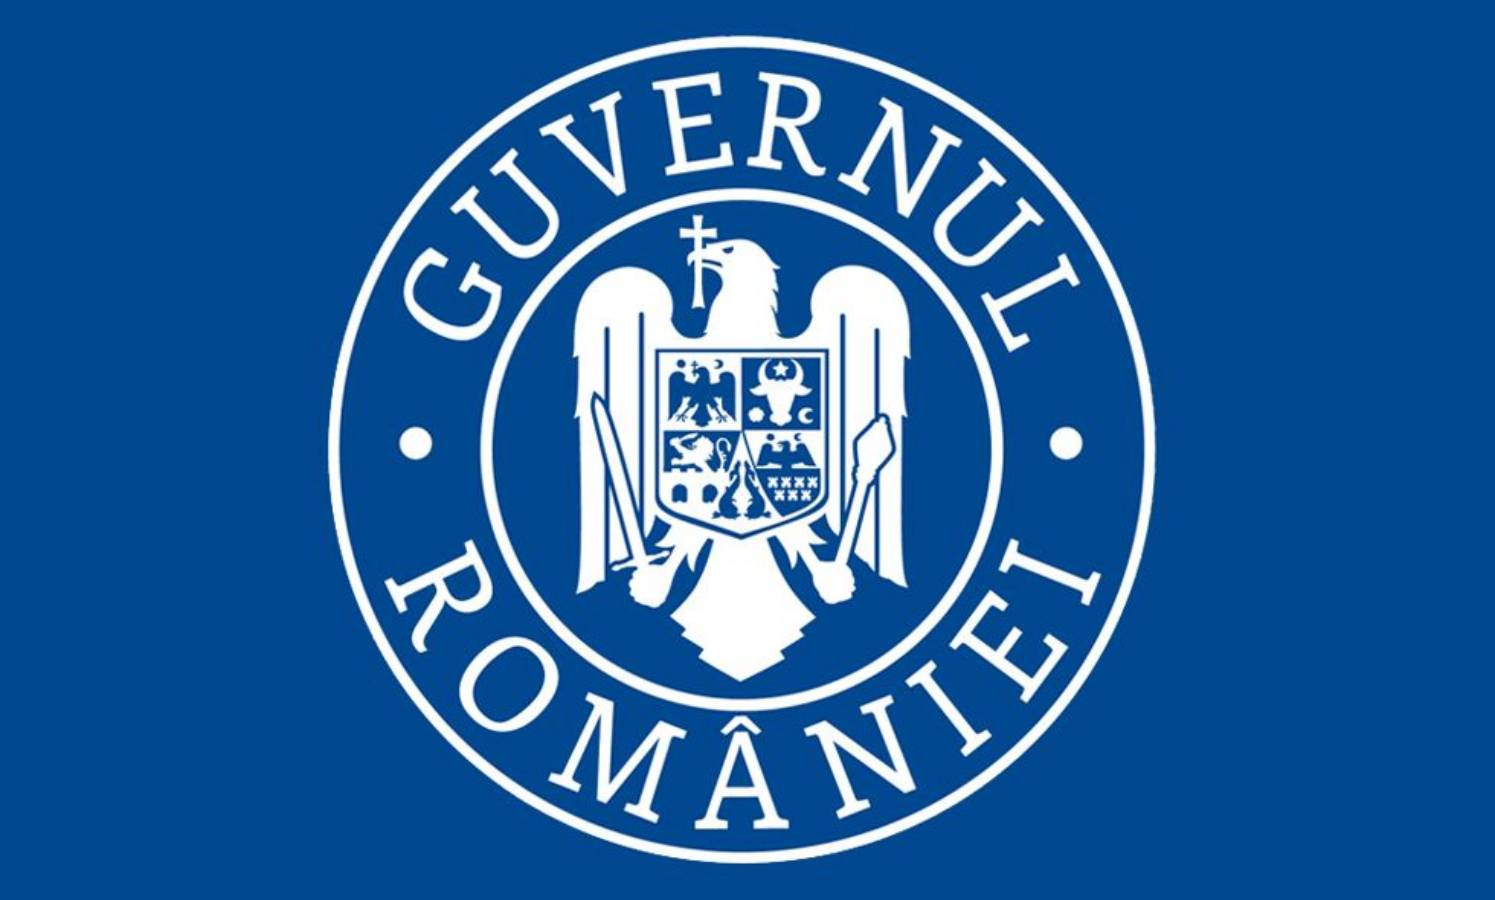 De Roemeense overheid heeft verplichte maatregelen genomen ter bescherming tegen het coronavirus